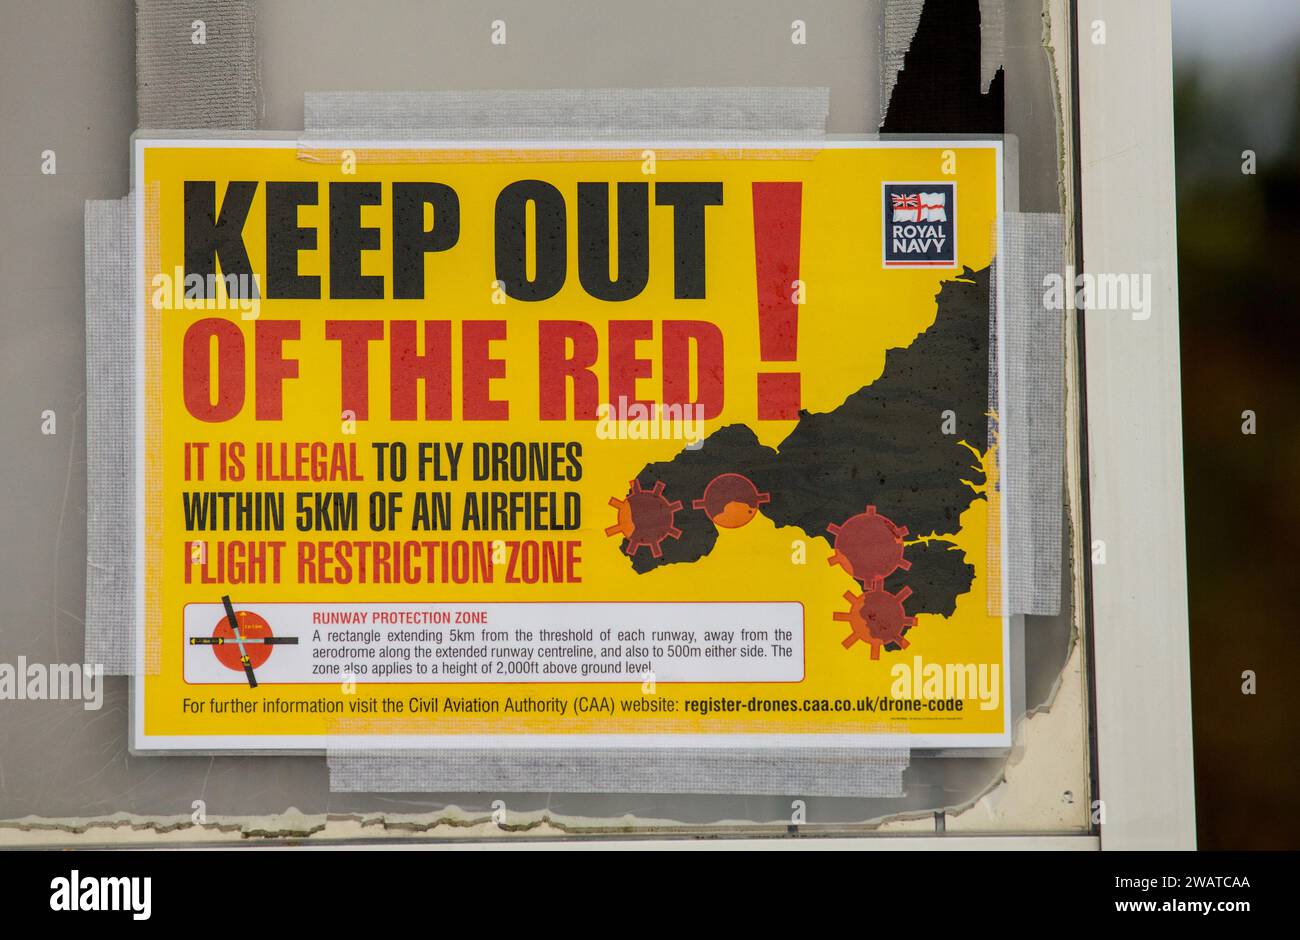 Cartello segnaletico relativo all'uso illegale di droni entro 5 km da un aeroporto. Commerciale e militare. Aeroporti della Royal Navy nel West Country del Regno Unito. Foto Stock